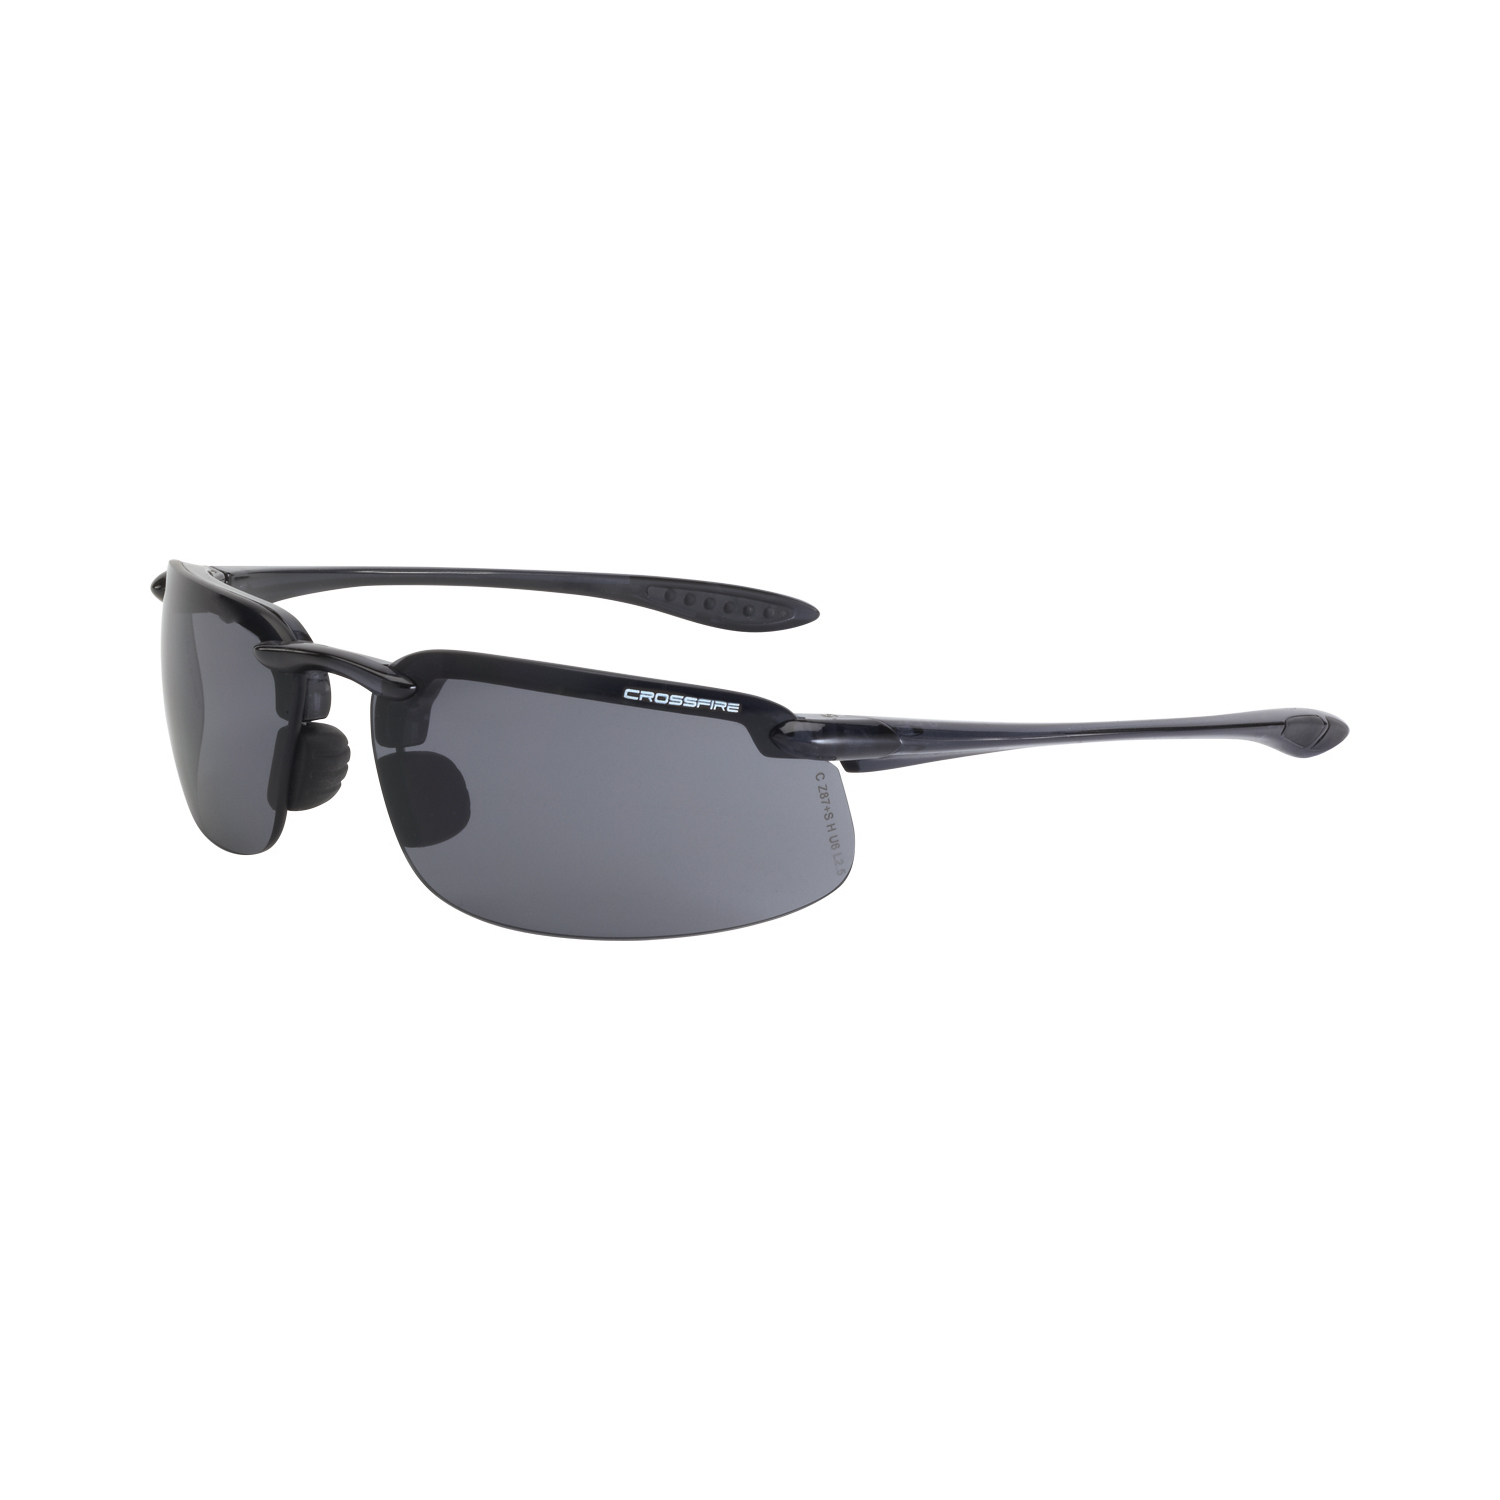 ES4 Premium Safety Eyewear - Crystal Black Frame - Smoke Lens